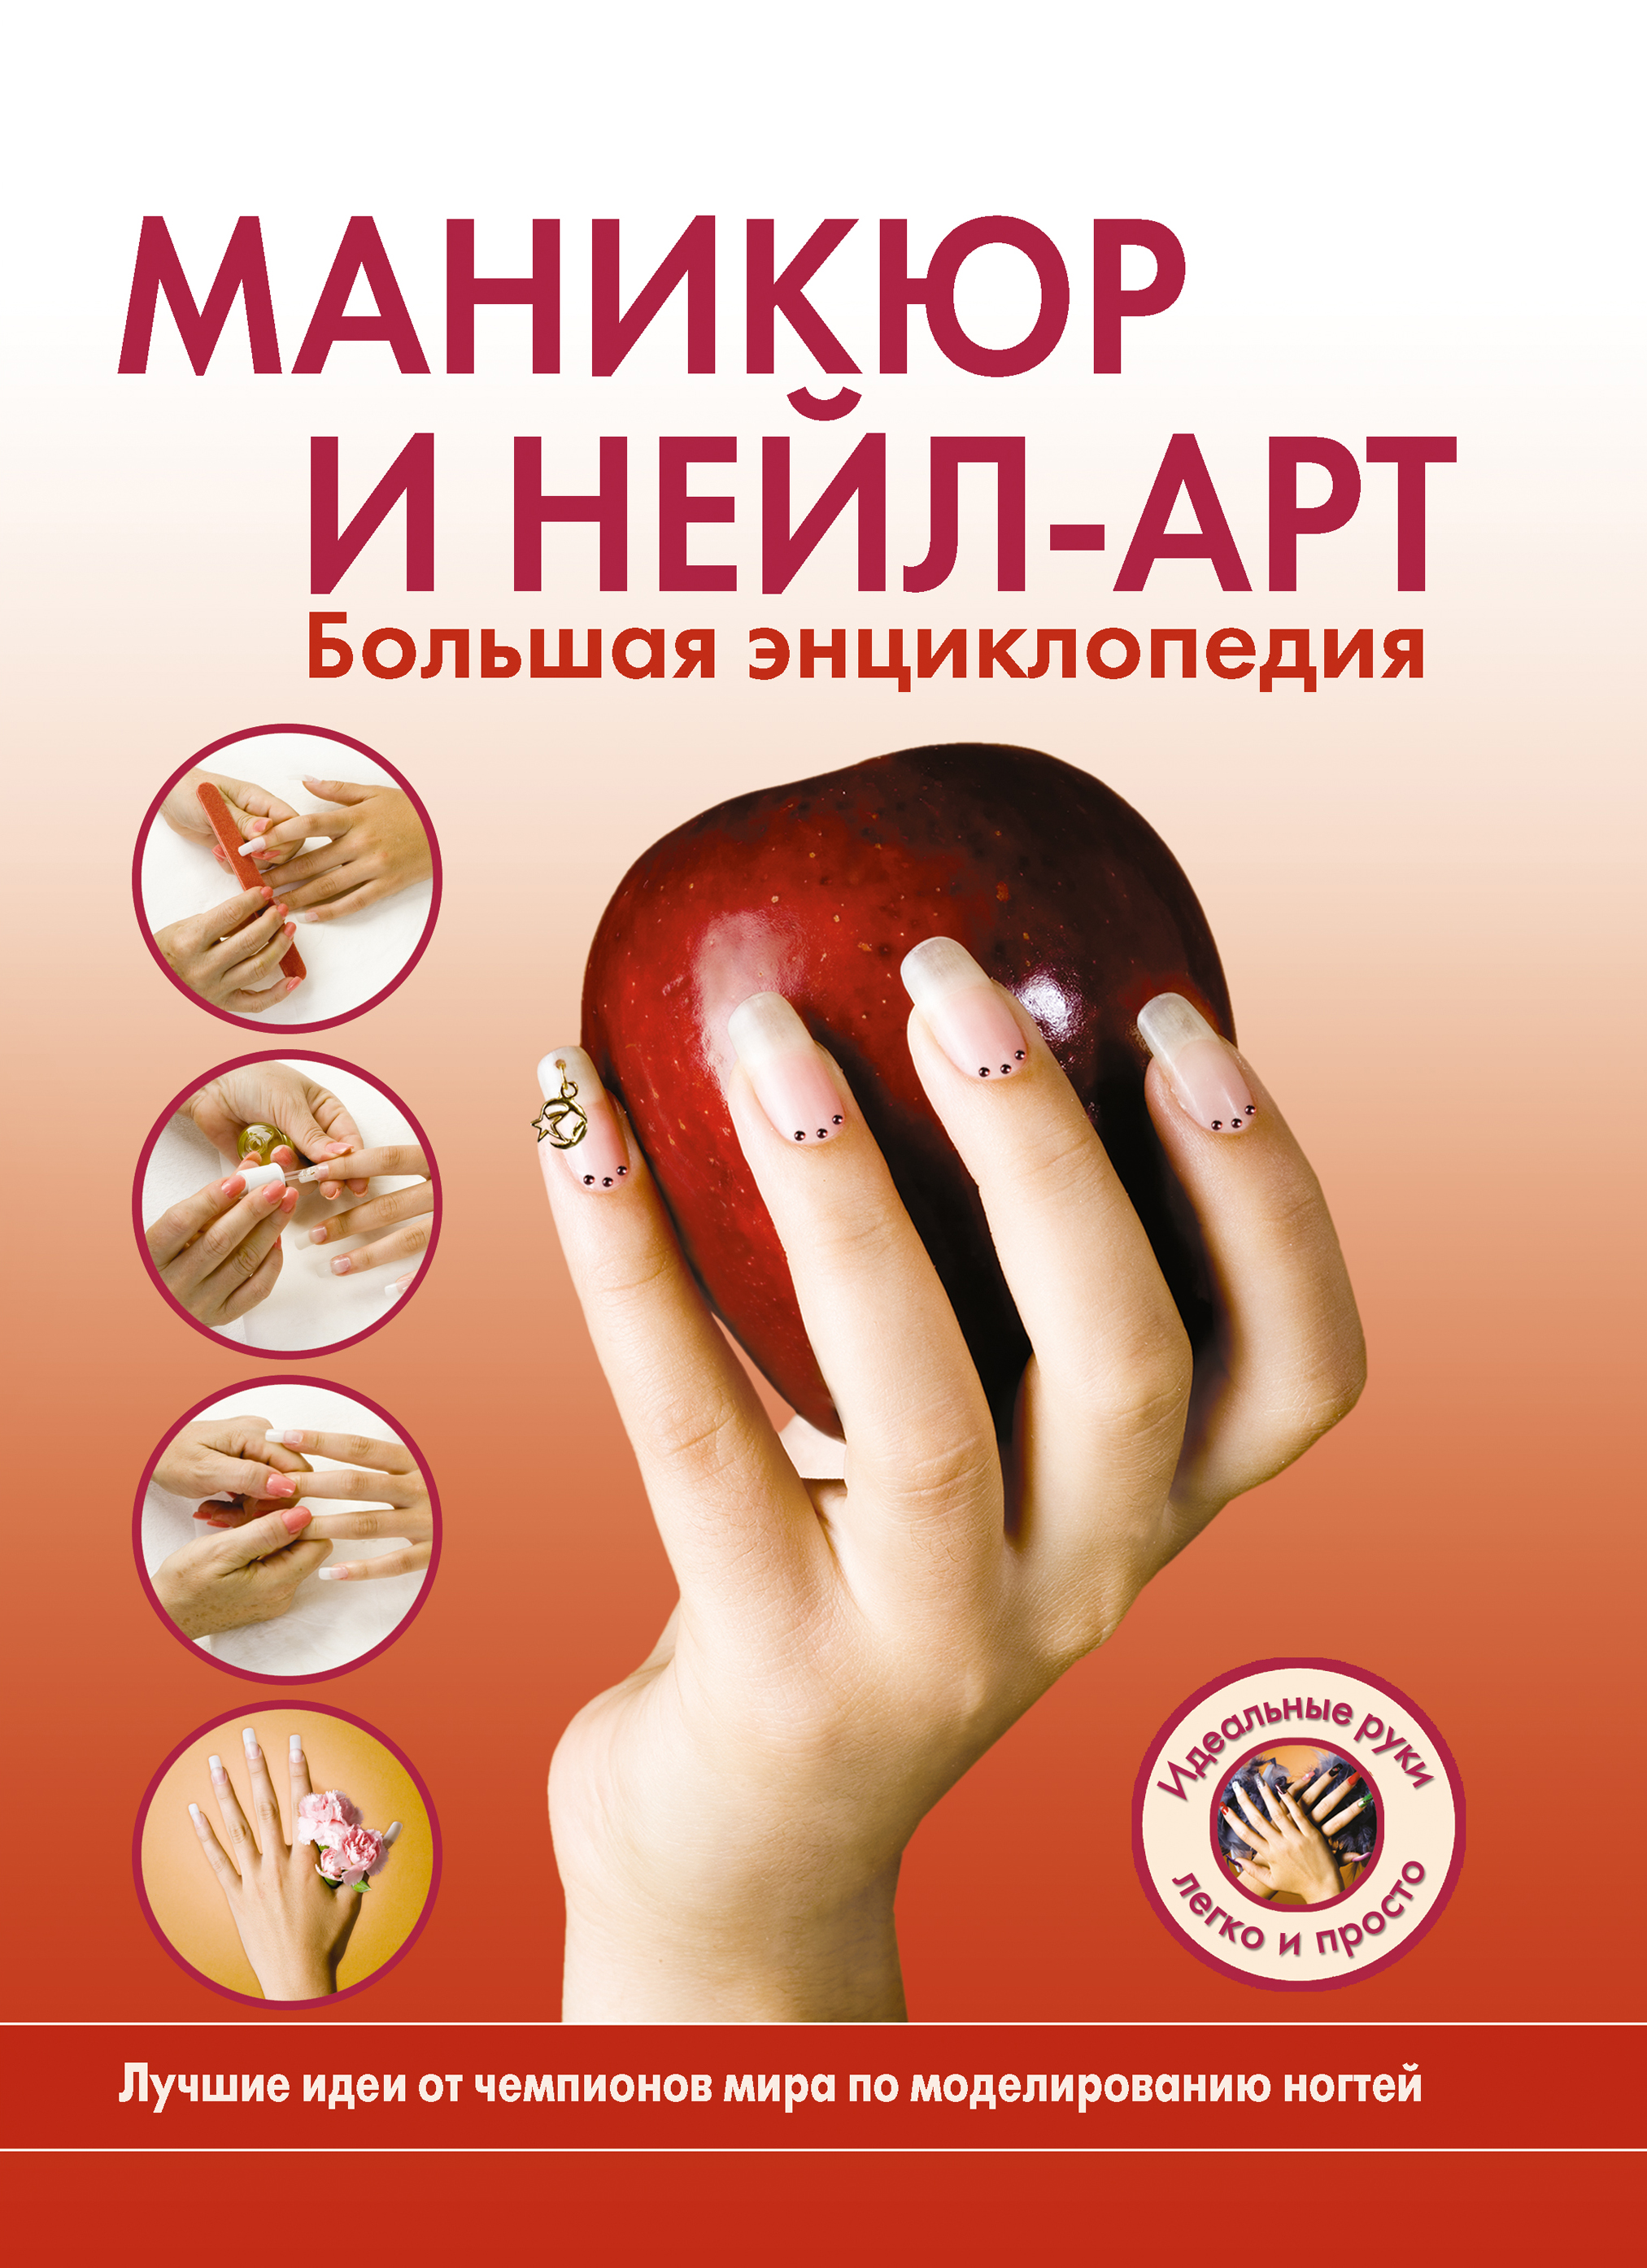 https://cdn.eksmo.ru/v2/ITD000000000164018/COVER/cover13d.jpg